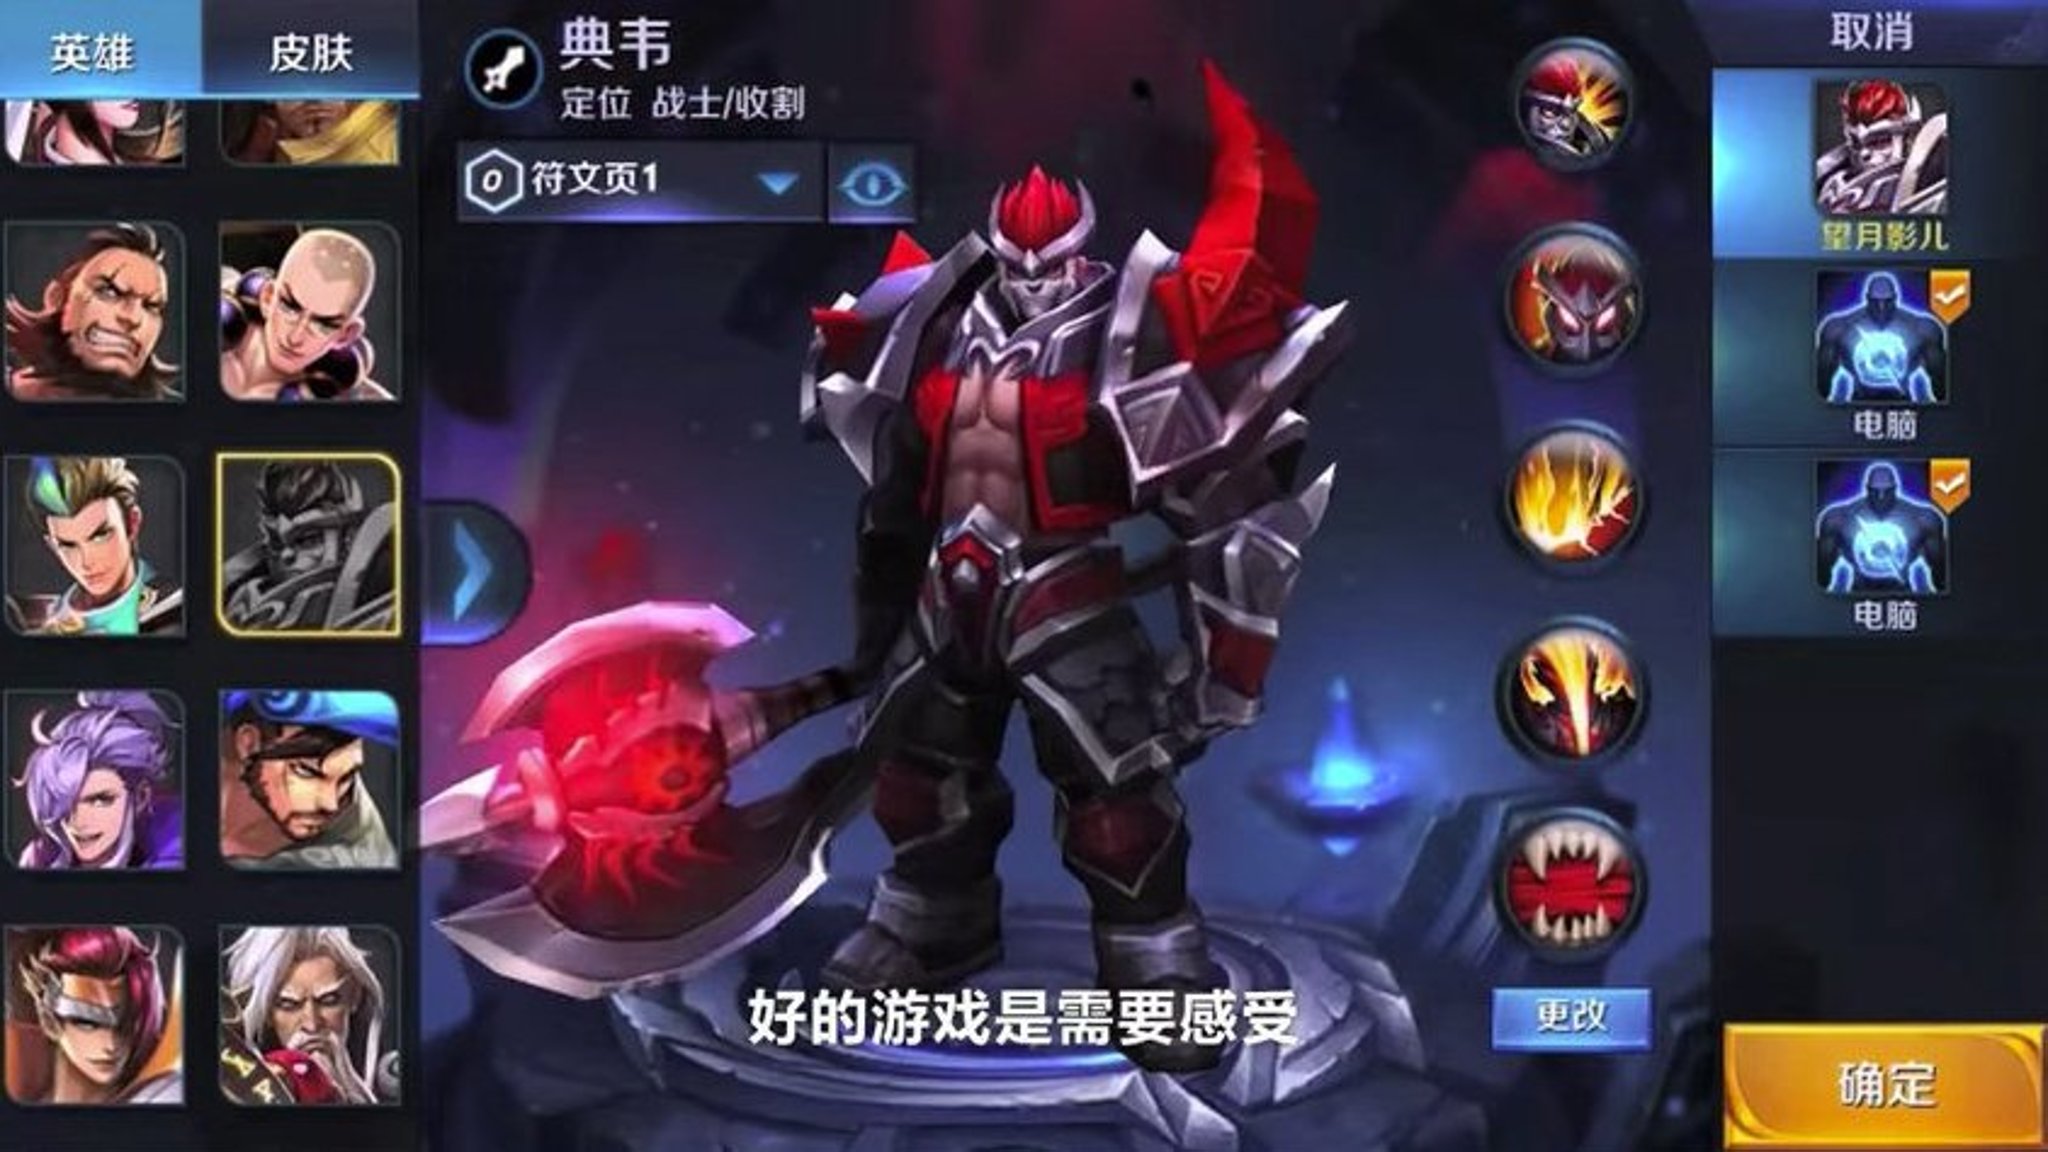 Honor of Kings, el juego que arrasa en China con 200 millones de jugadores